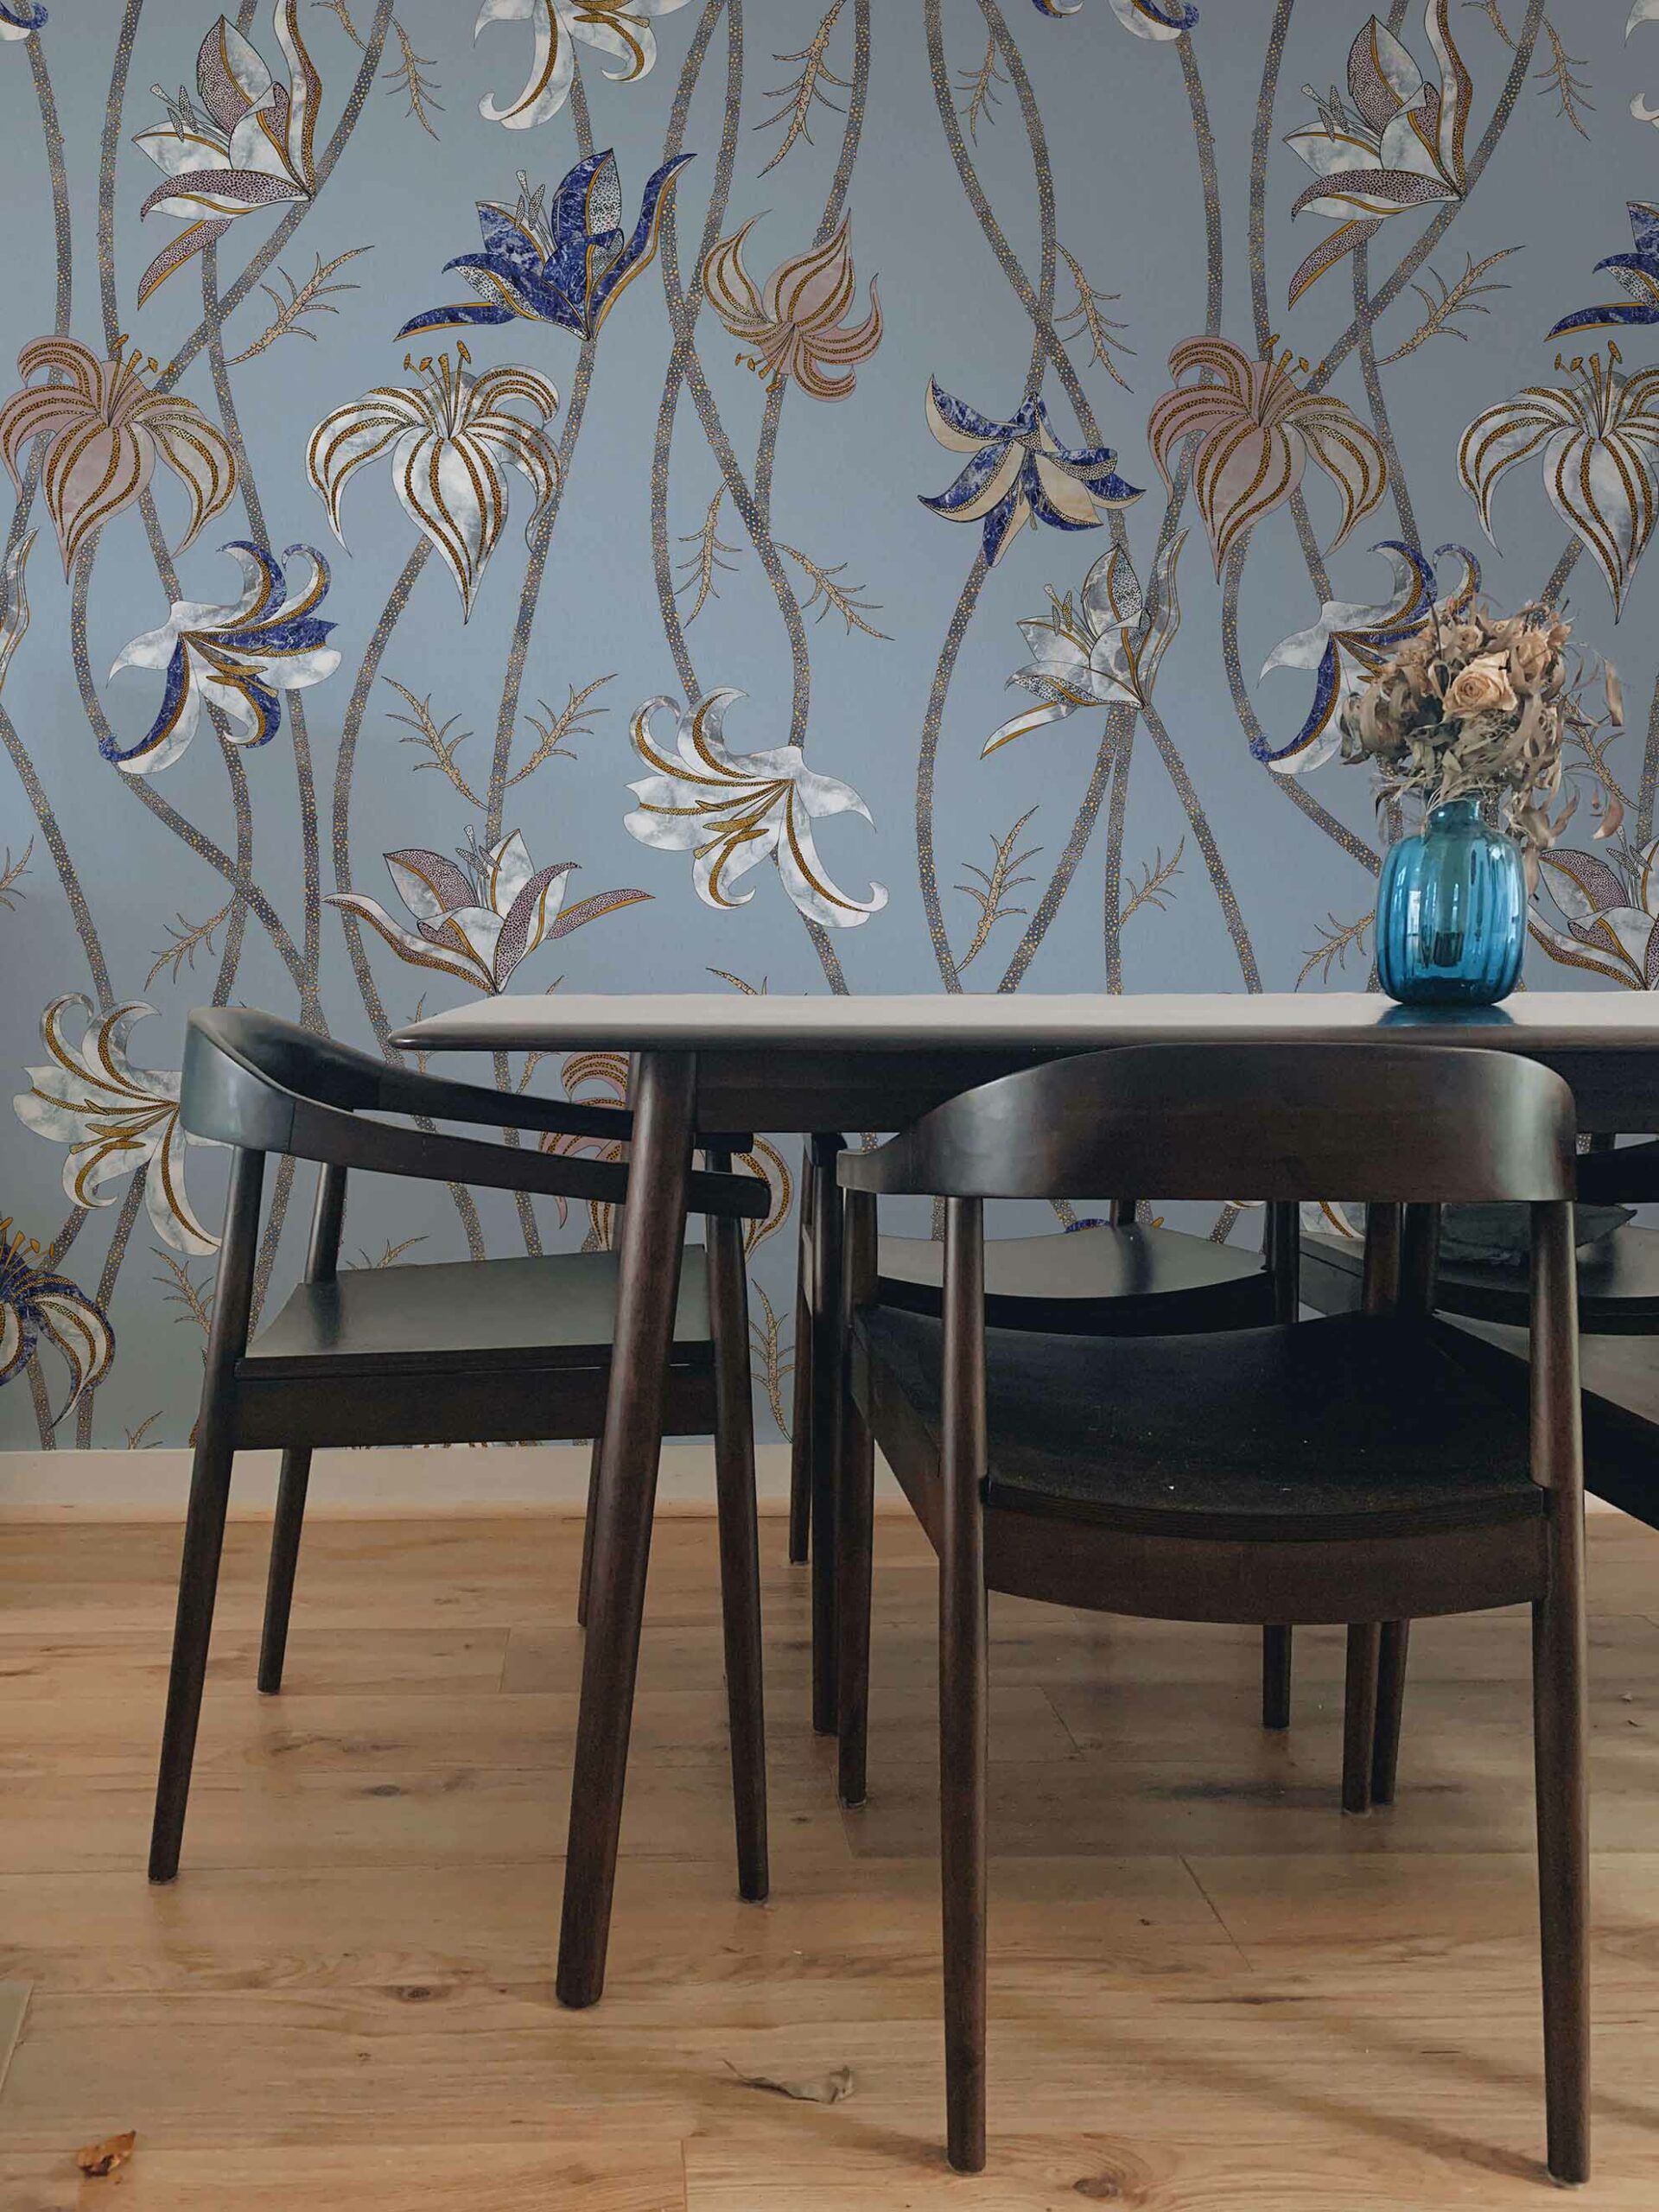 Fiori-azzurro-fiordaliso-MaVoix-carte-da-parati-wallpaper-living-room-interior